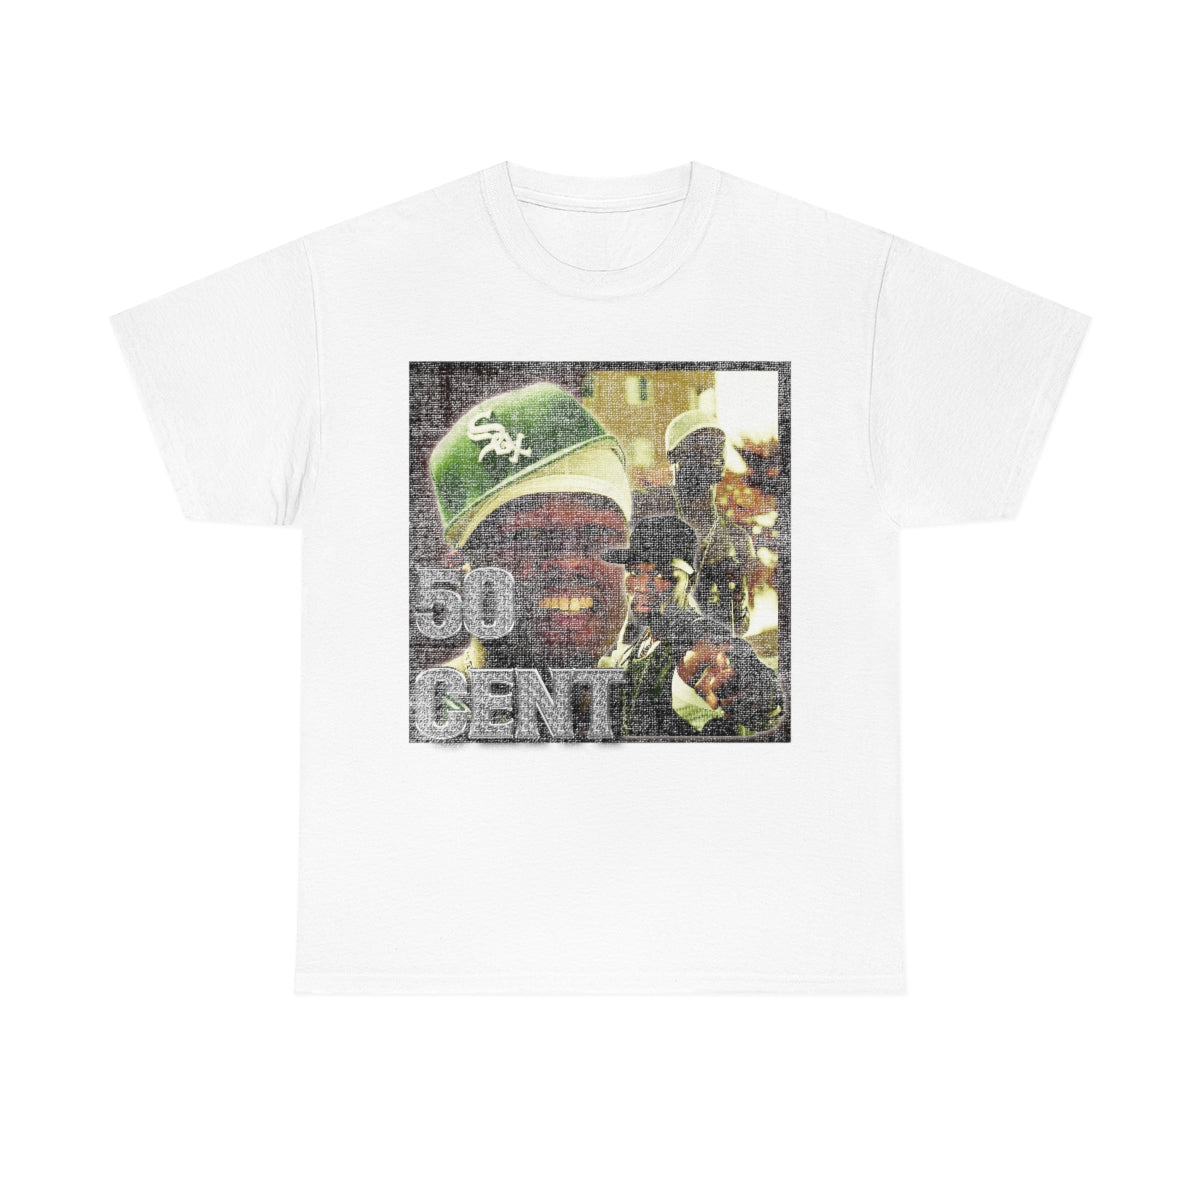 50 Cent Hiphop Legend Unisex Heavy Cotton Tee